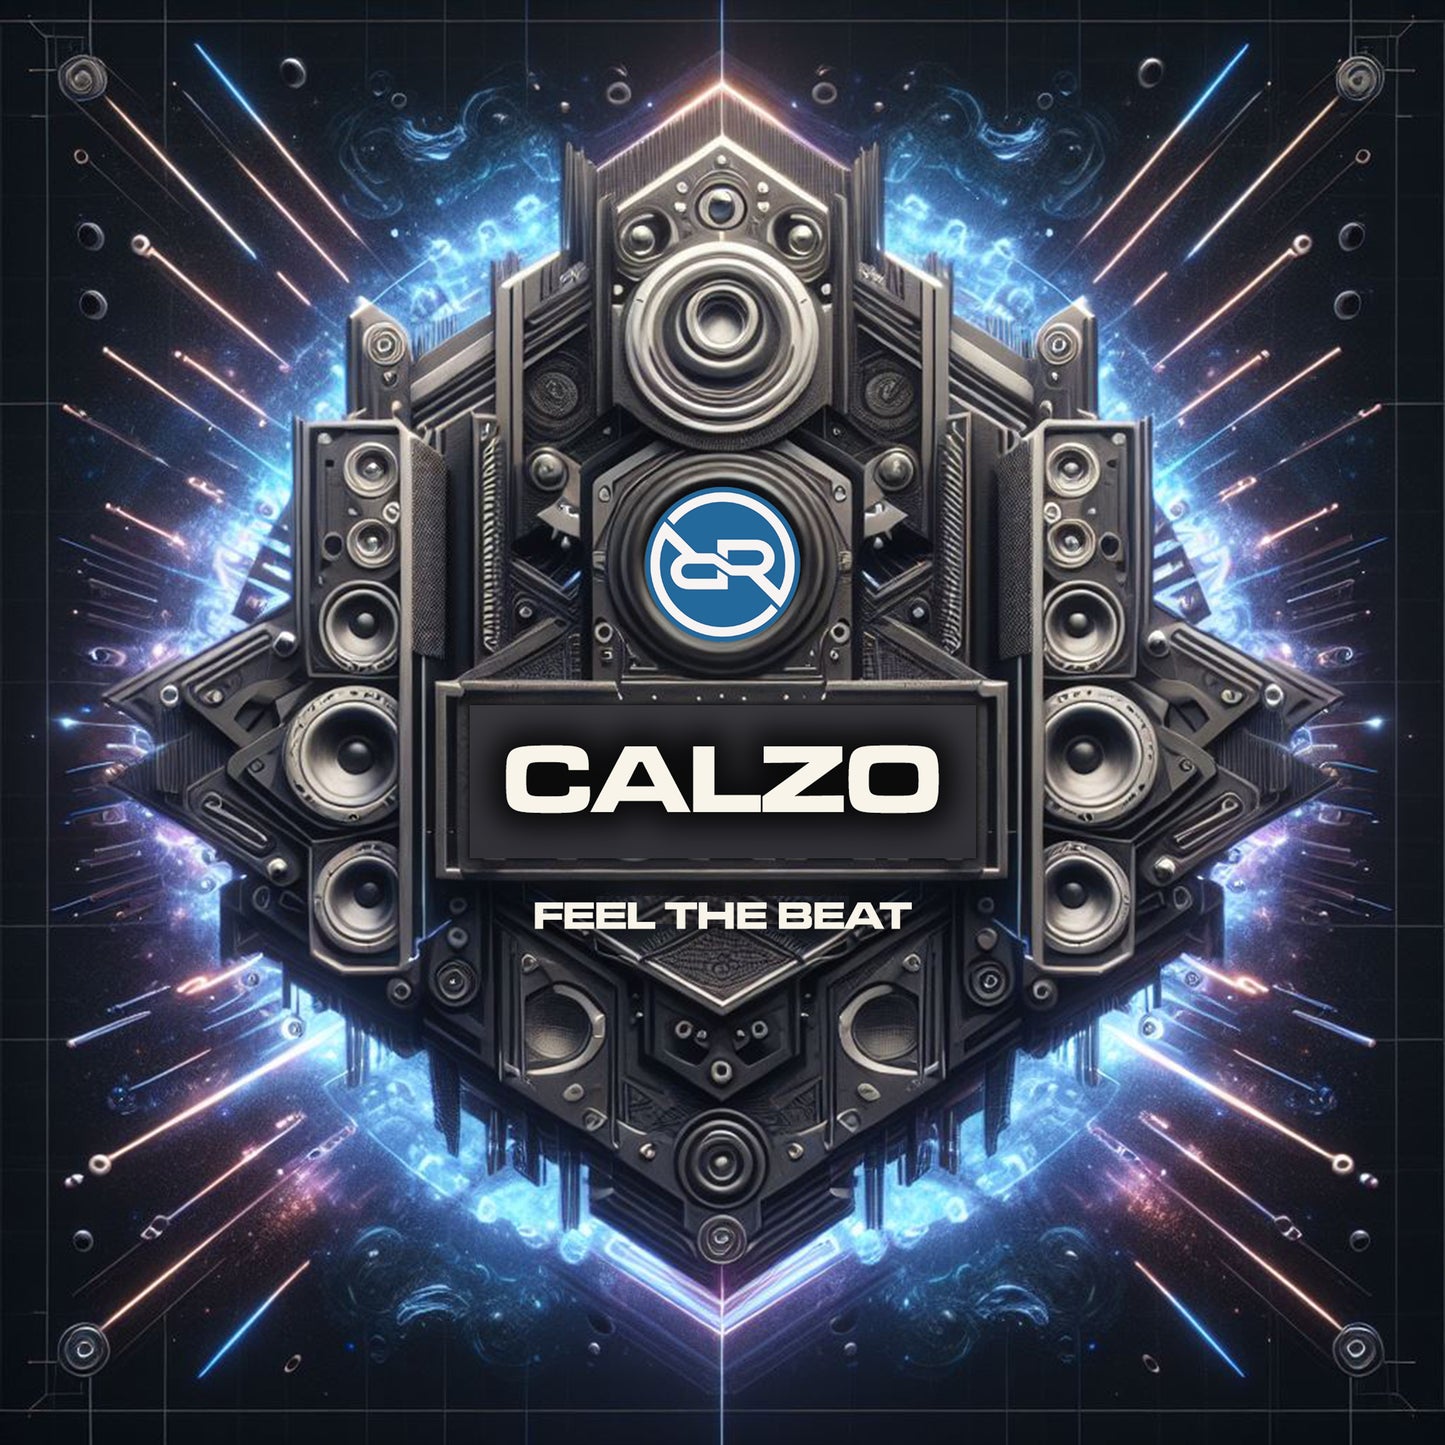 Callum Moran - Feel The Beat